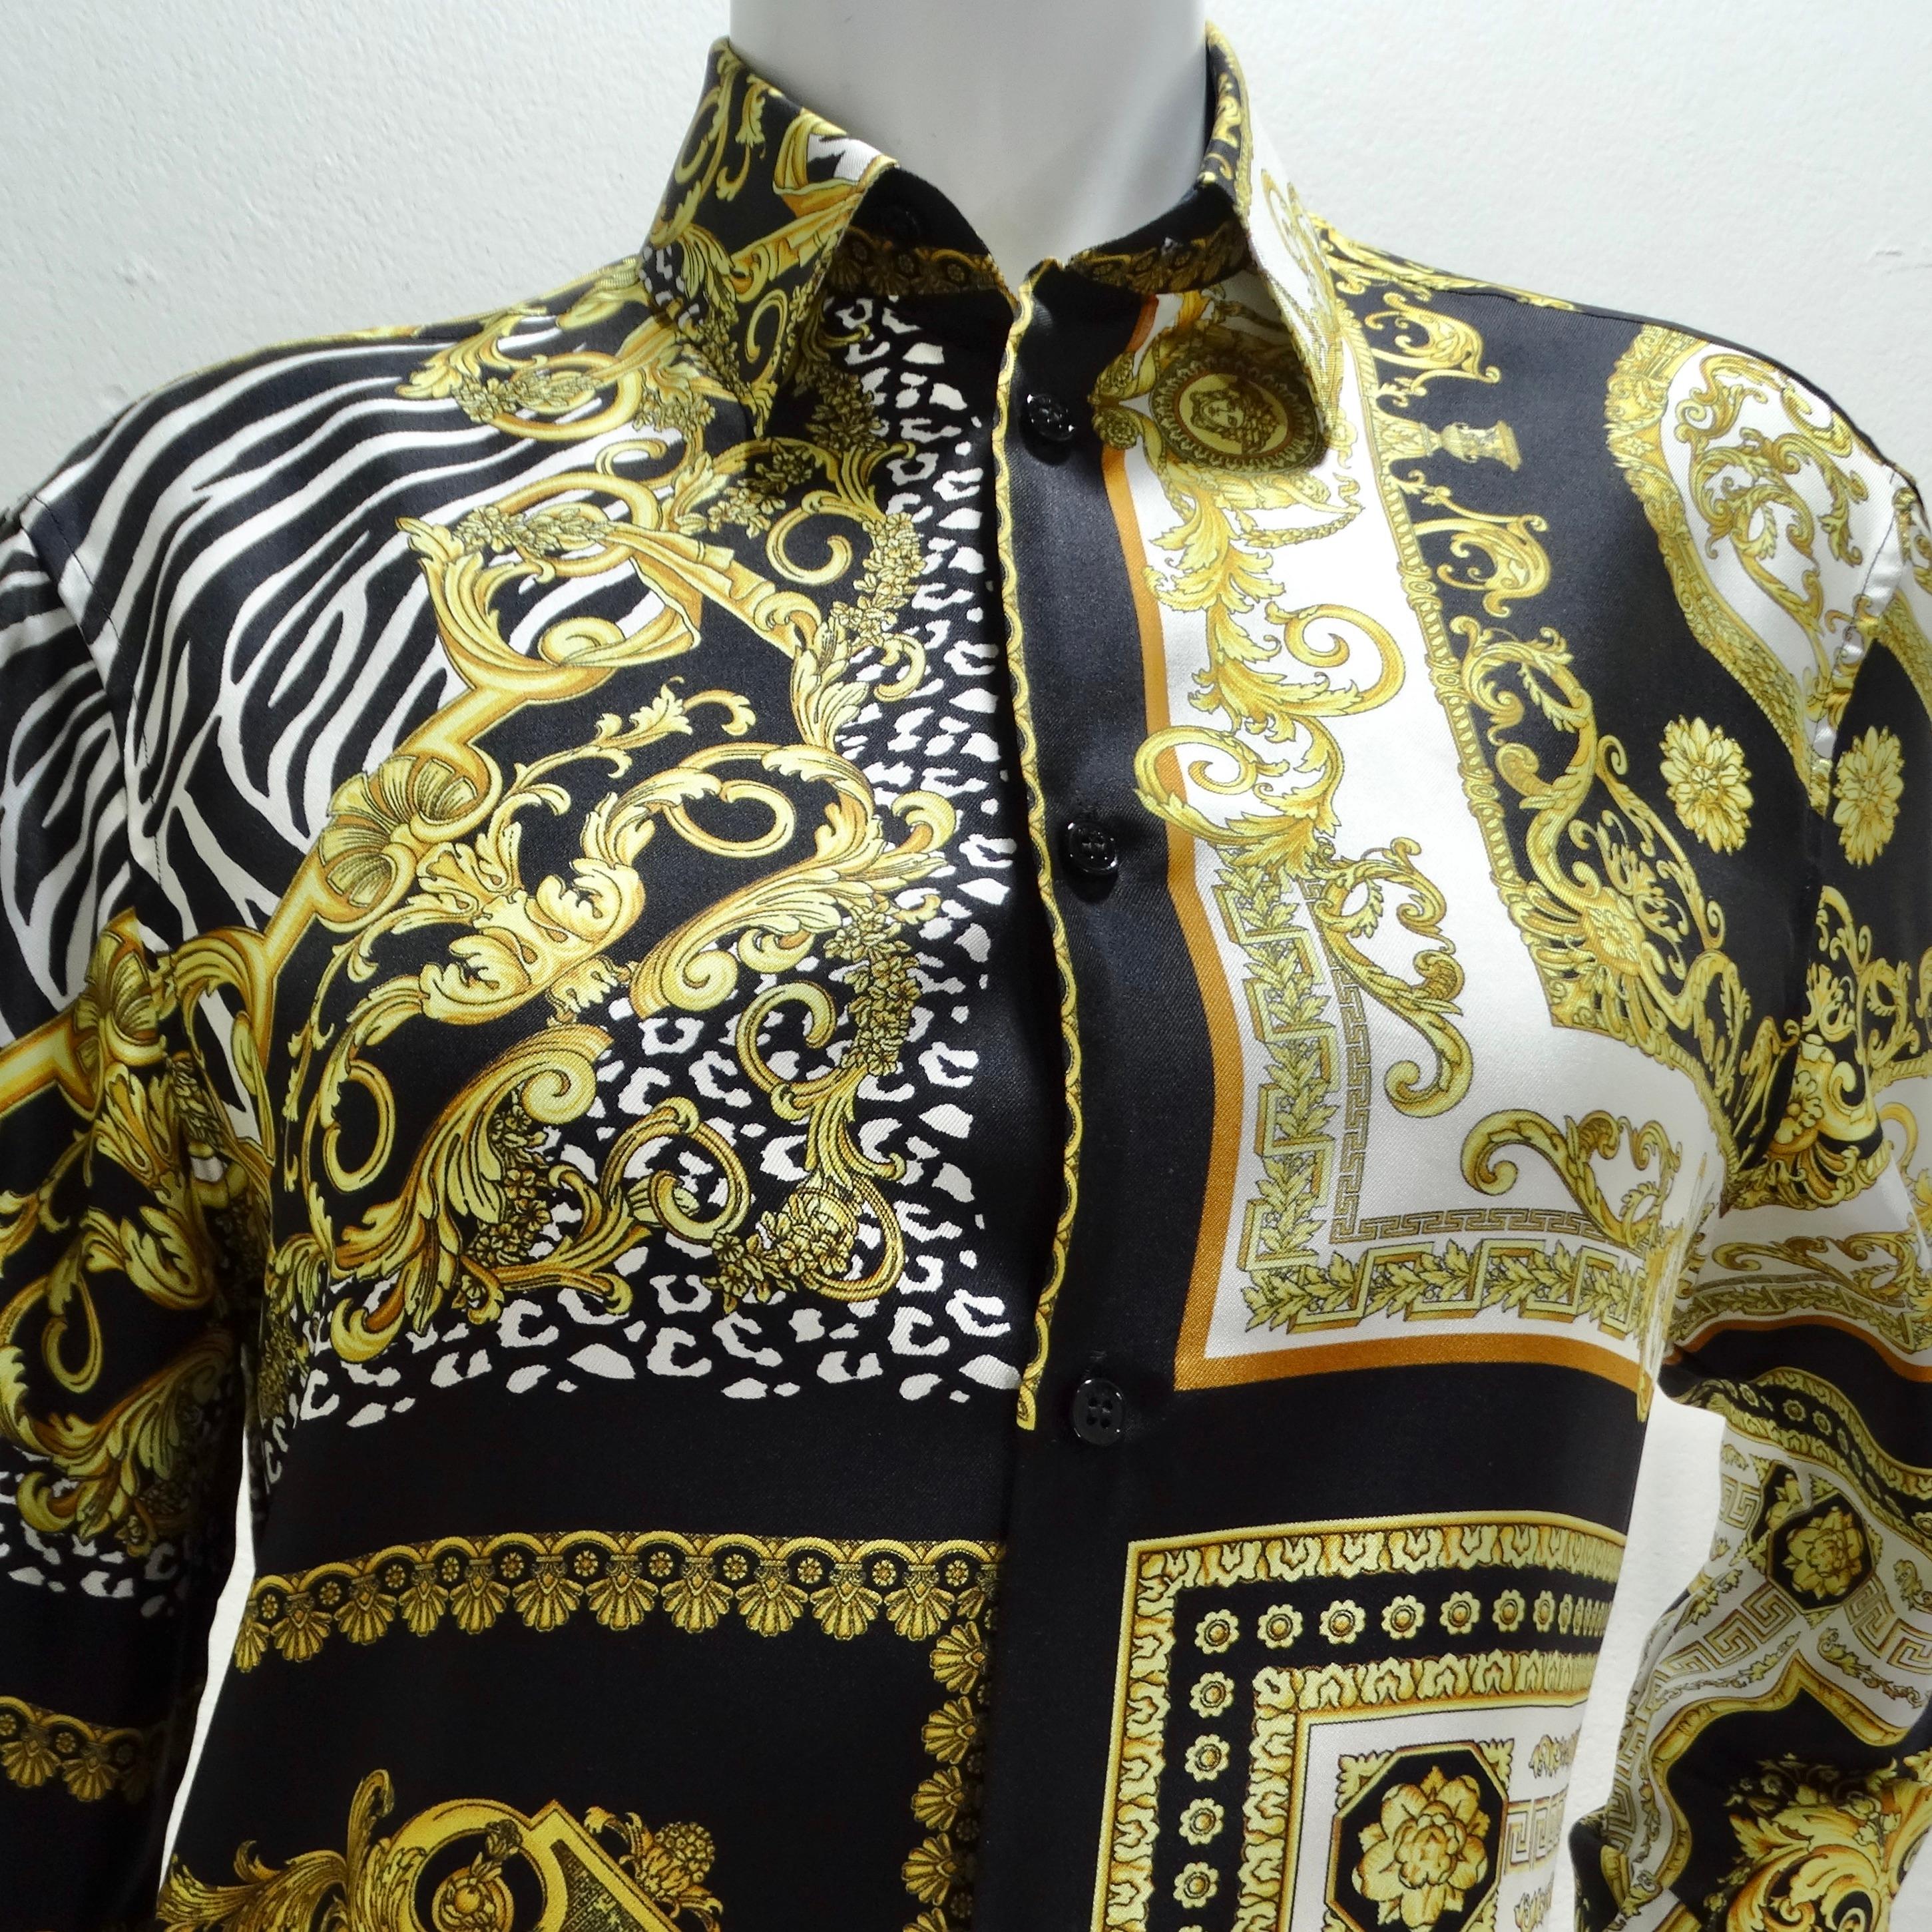 La chemise à boutons en soie baroque de Versace est une pièce luxueuse et marquante qui incarne l'esthétique emblématique de la marque.

Confectionnée en soie de haute qualité, cette chemise boutonnée à col classique présente un imprimé baroque